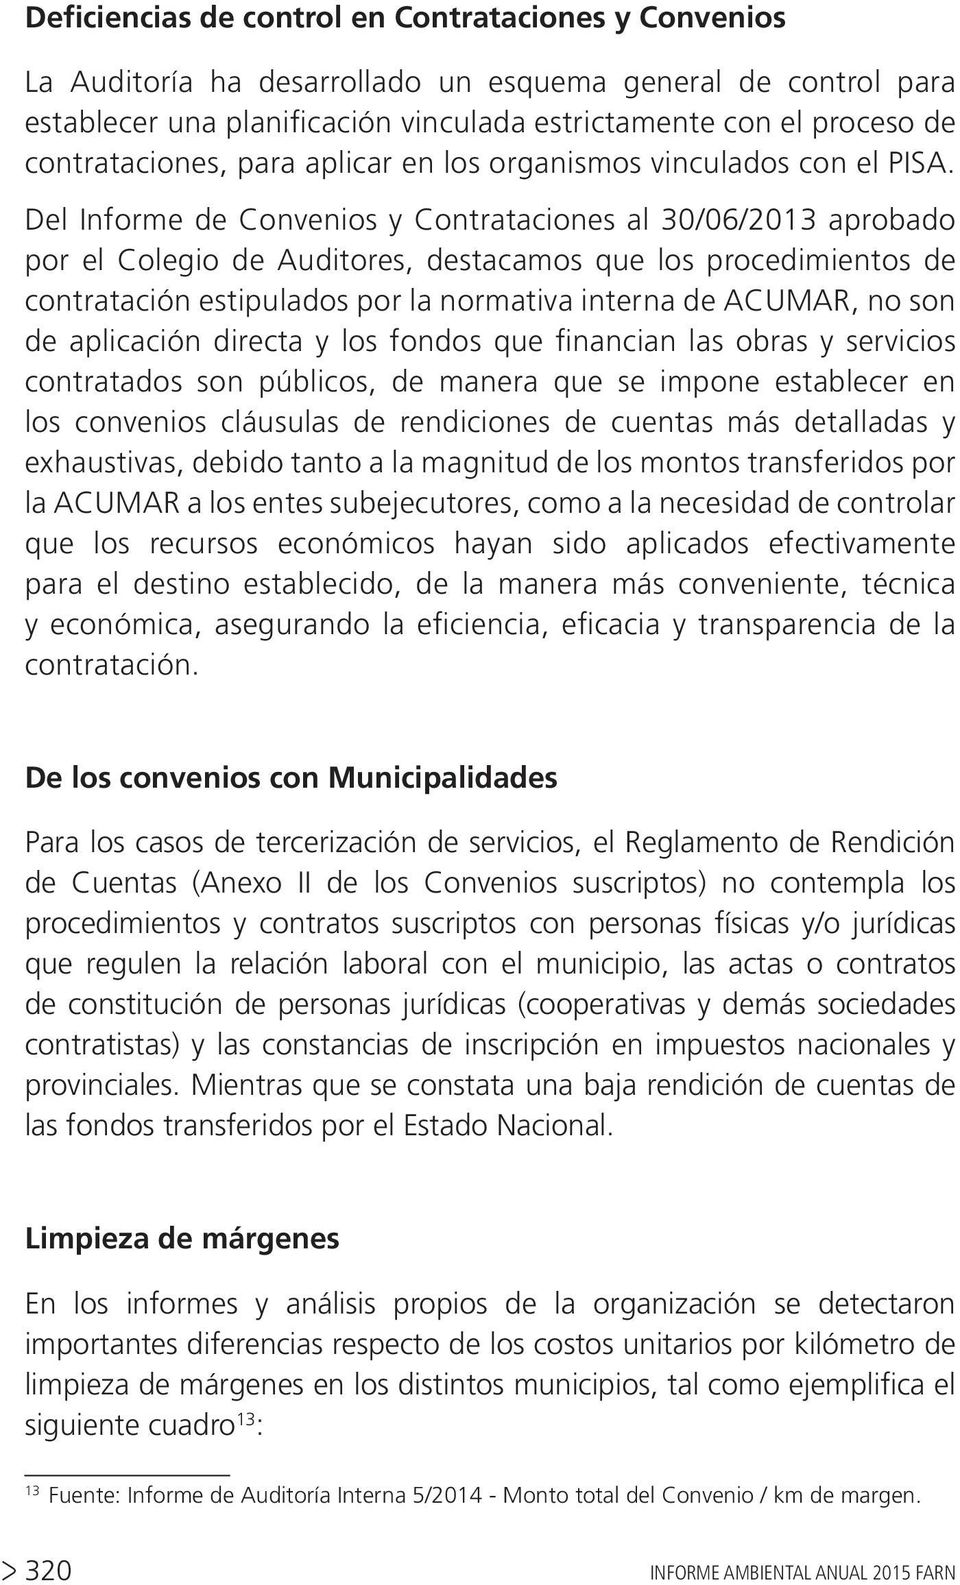 Del Informe de Convenios y Contrataciones al 30/06/2013 aprobado por el Colegio de Auditores, destacamos que los procedimientos de contratación estipulados por la normativa interna de ACUMAR, no son